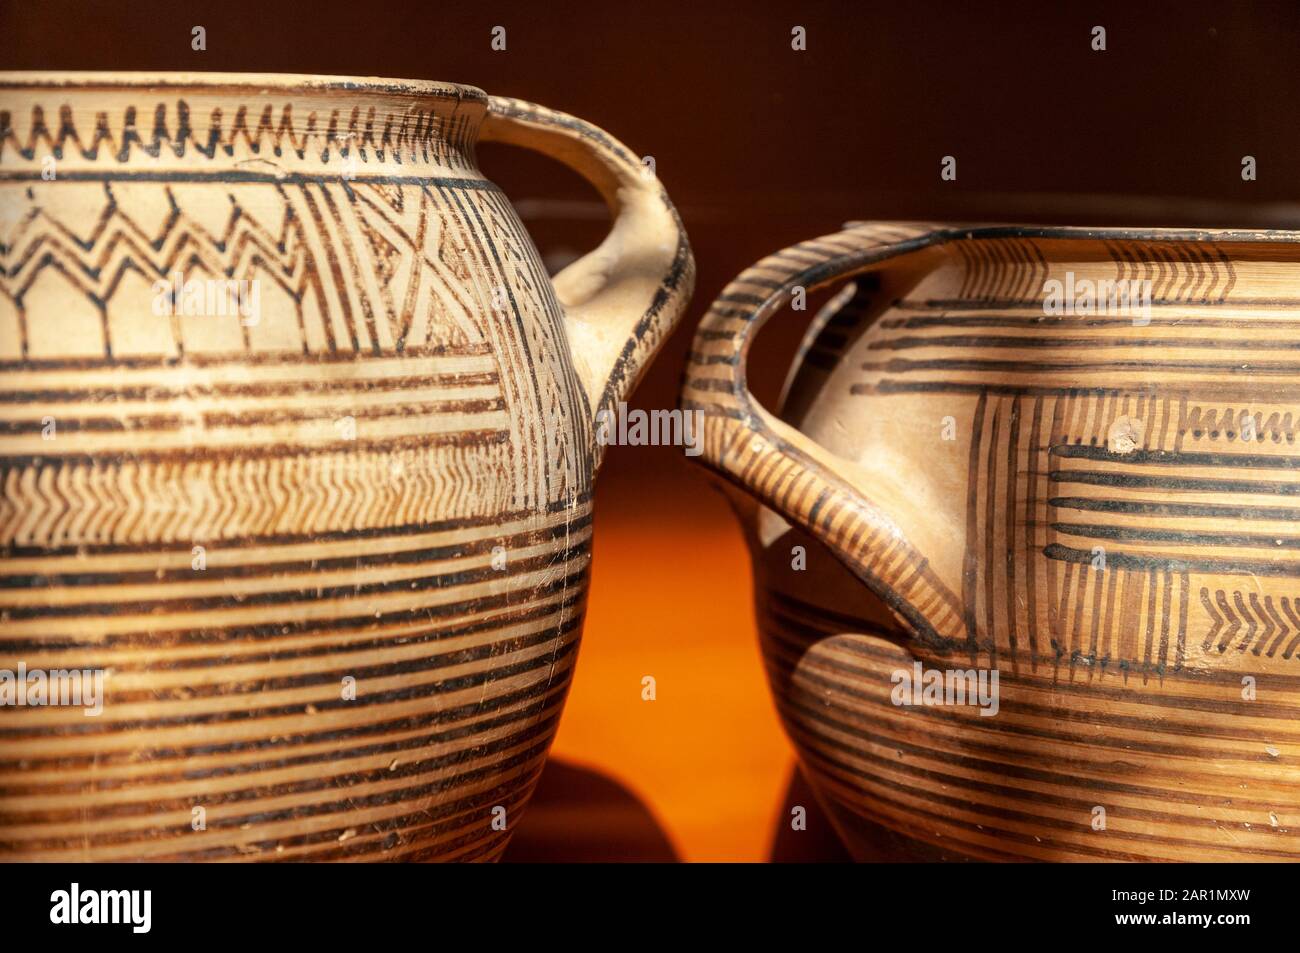 Eine Museumsausstellung von frühgriechischen Keramik, Geometrischen Kratern, Graburnen, von 750-720v. chr. aus Gräbern im Antiken Korinth, Peloponnes, Griechenland. Stockfoto